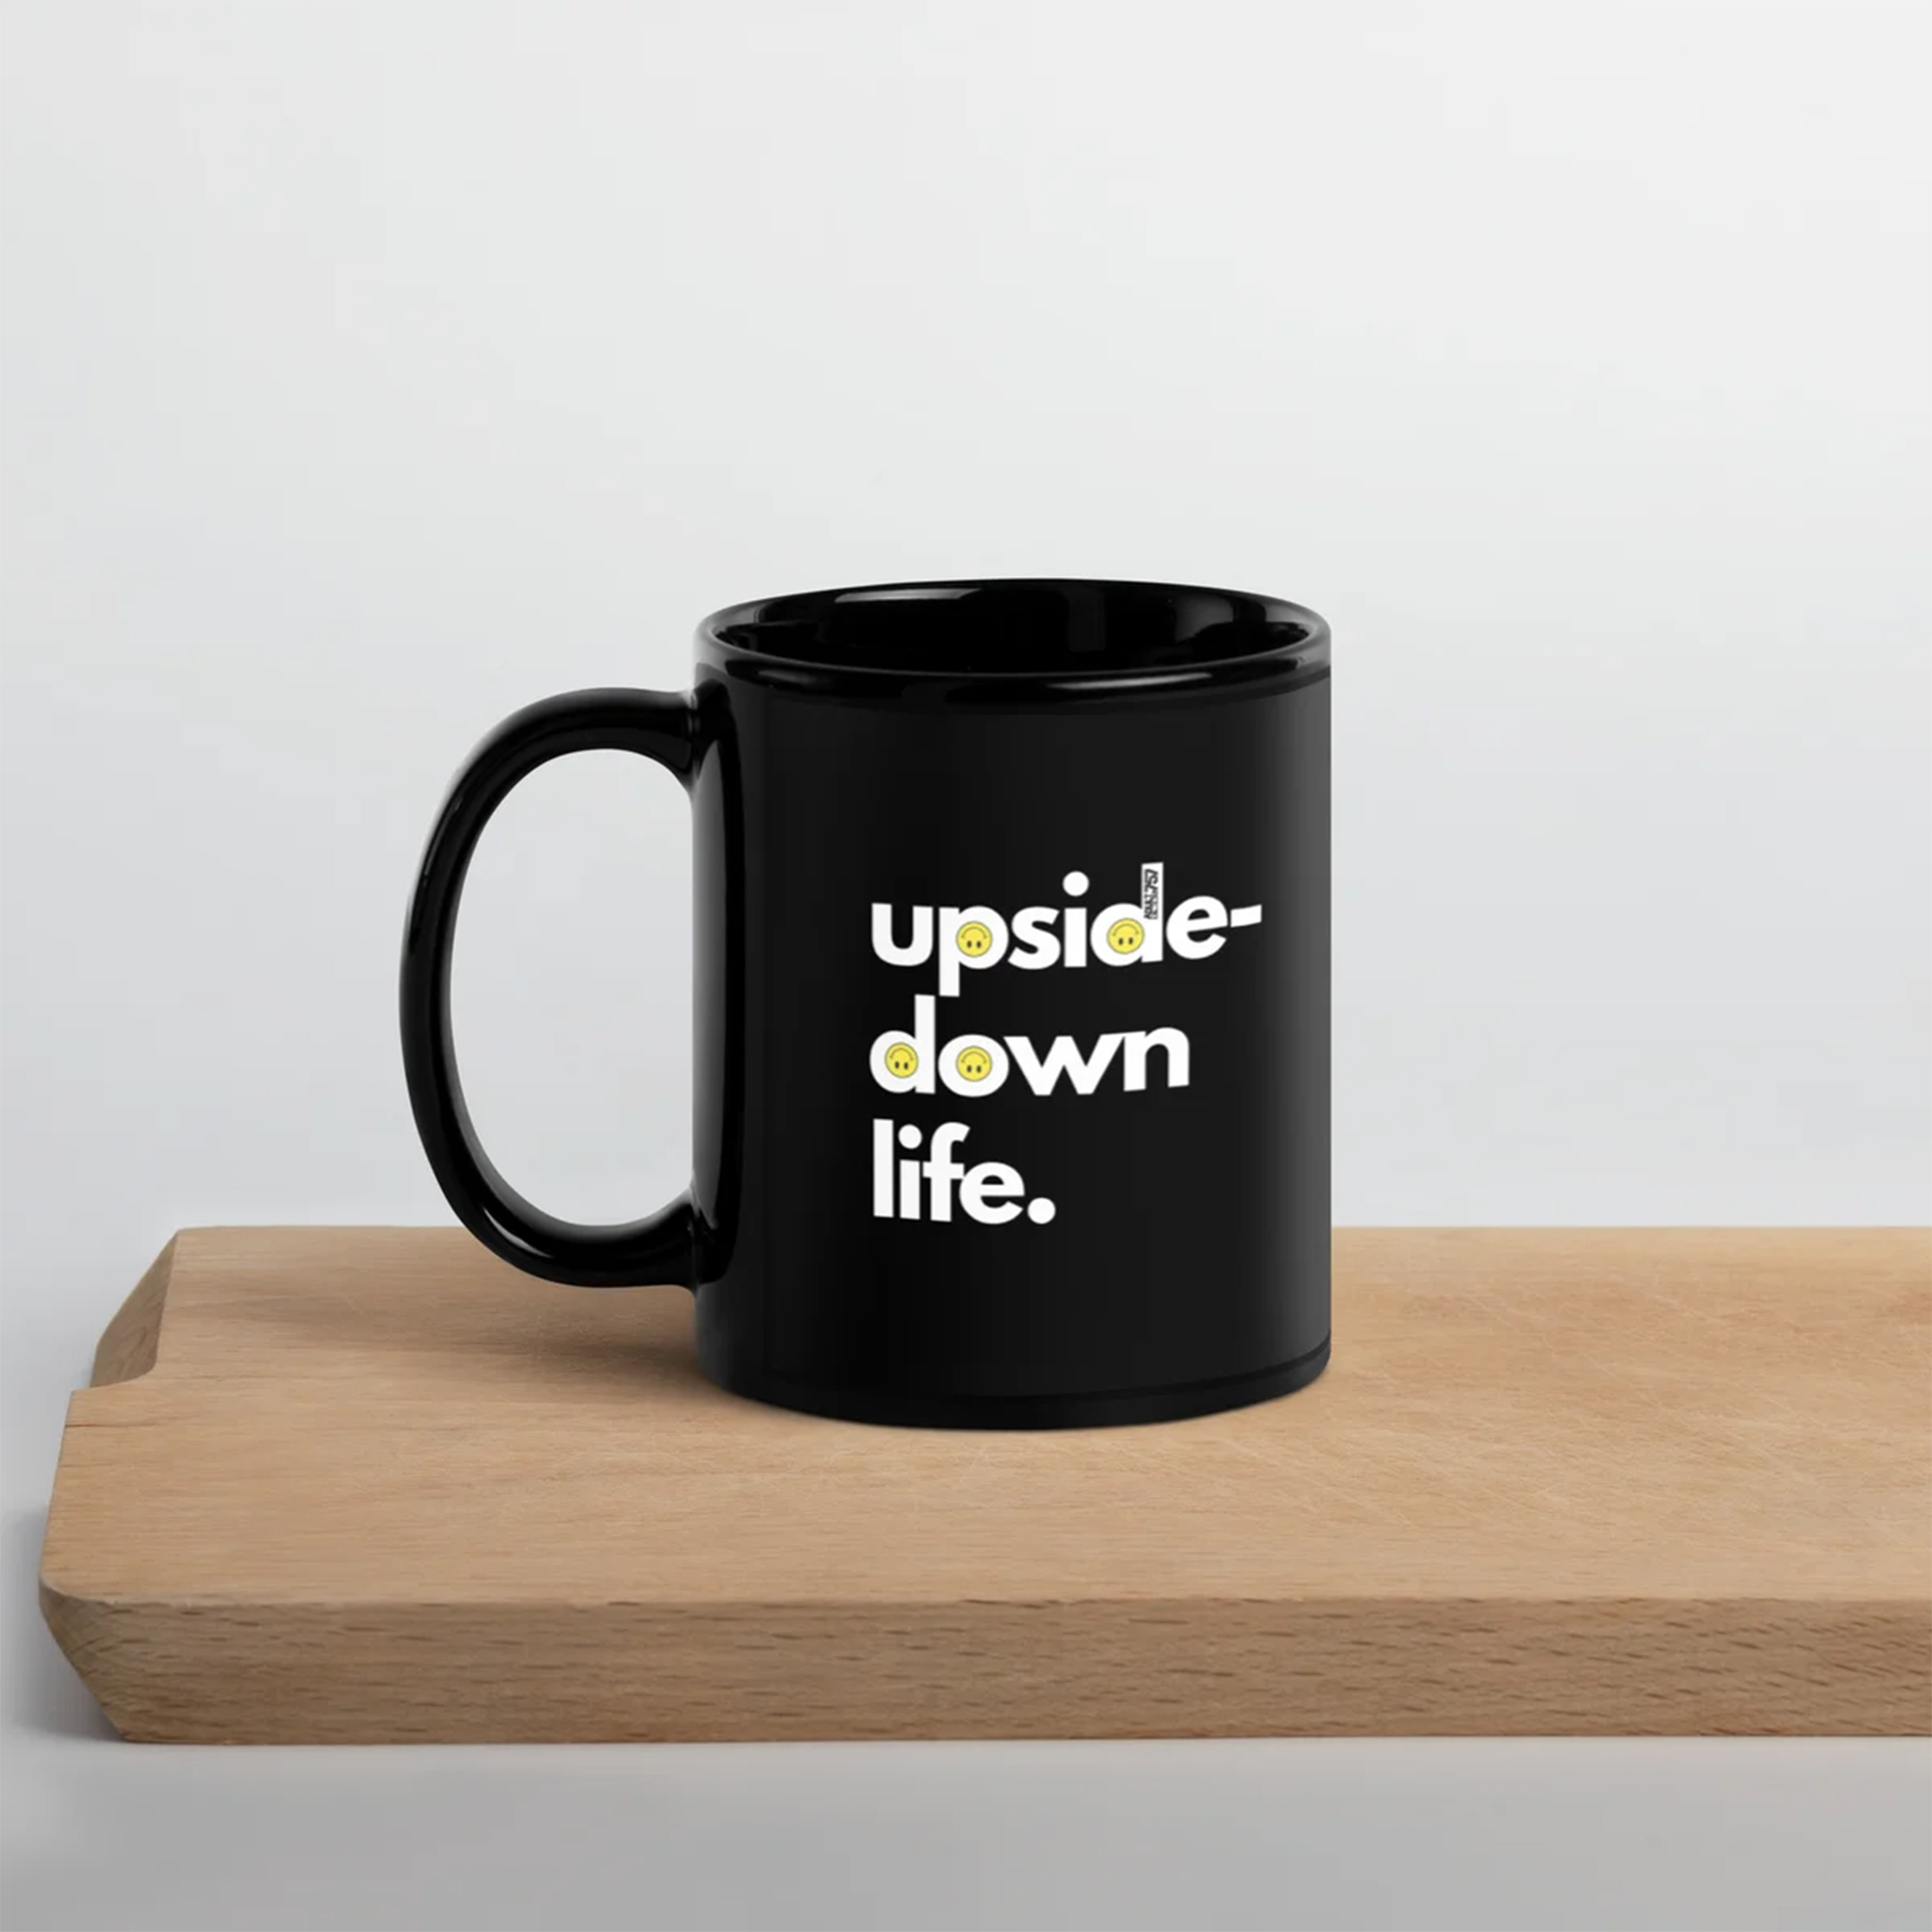 Upside Down Life - Mug